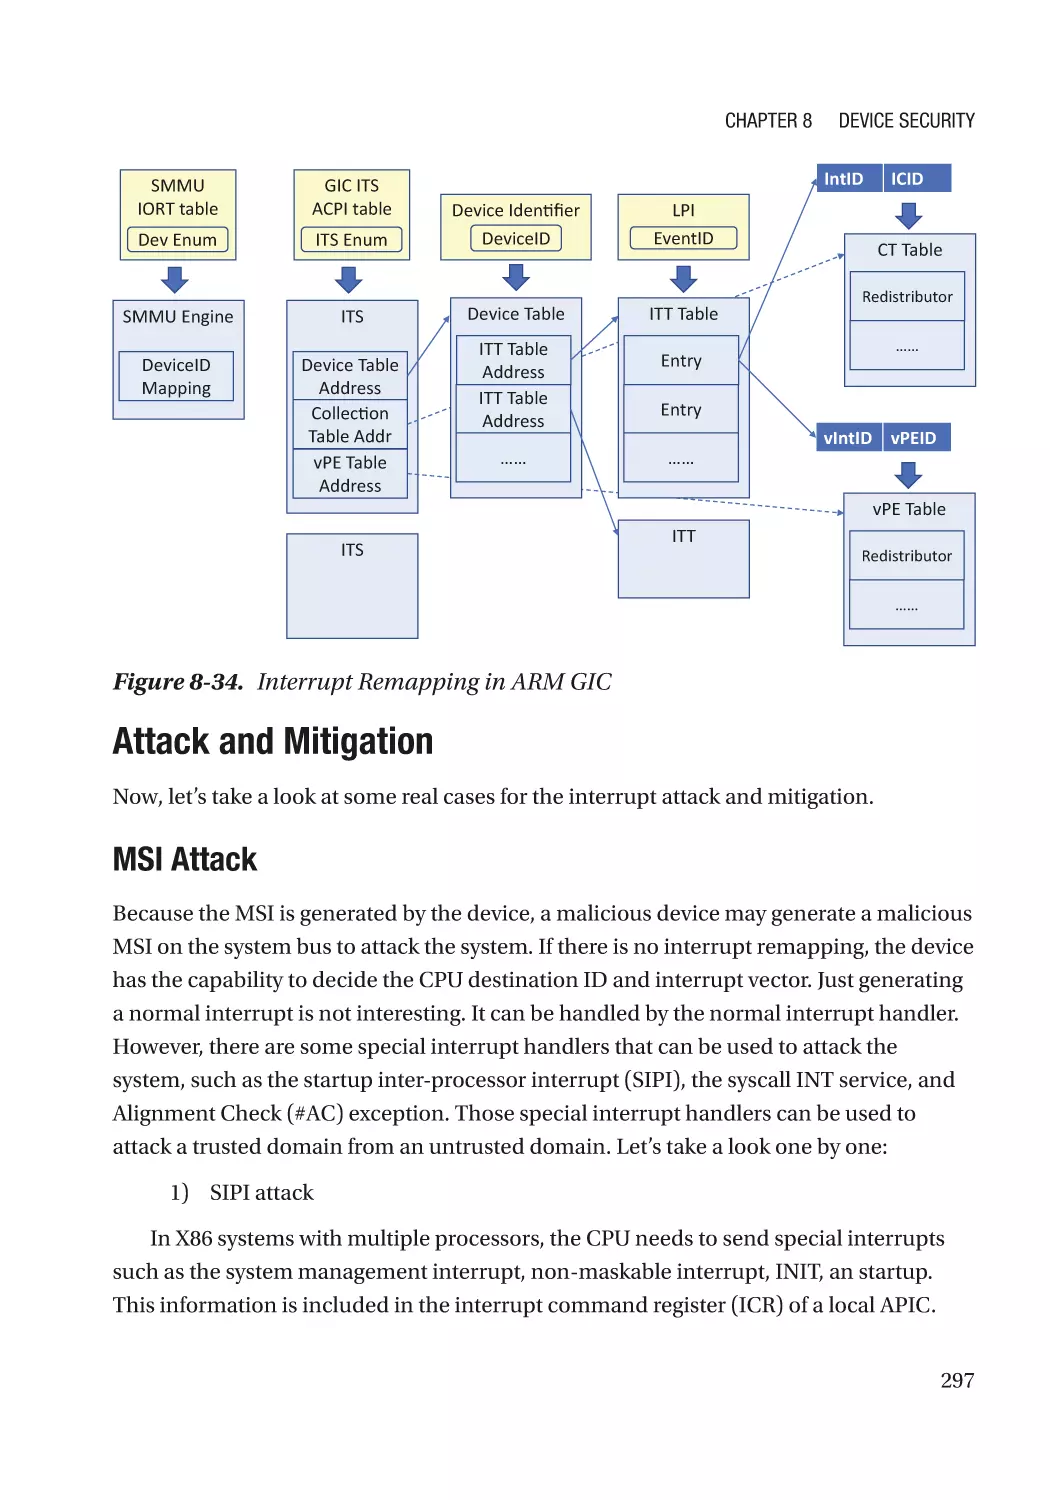 Attack and Mitigation
MSI Attack